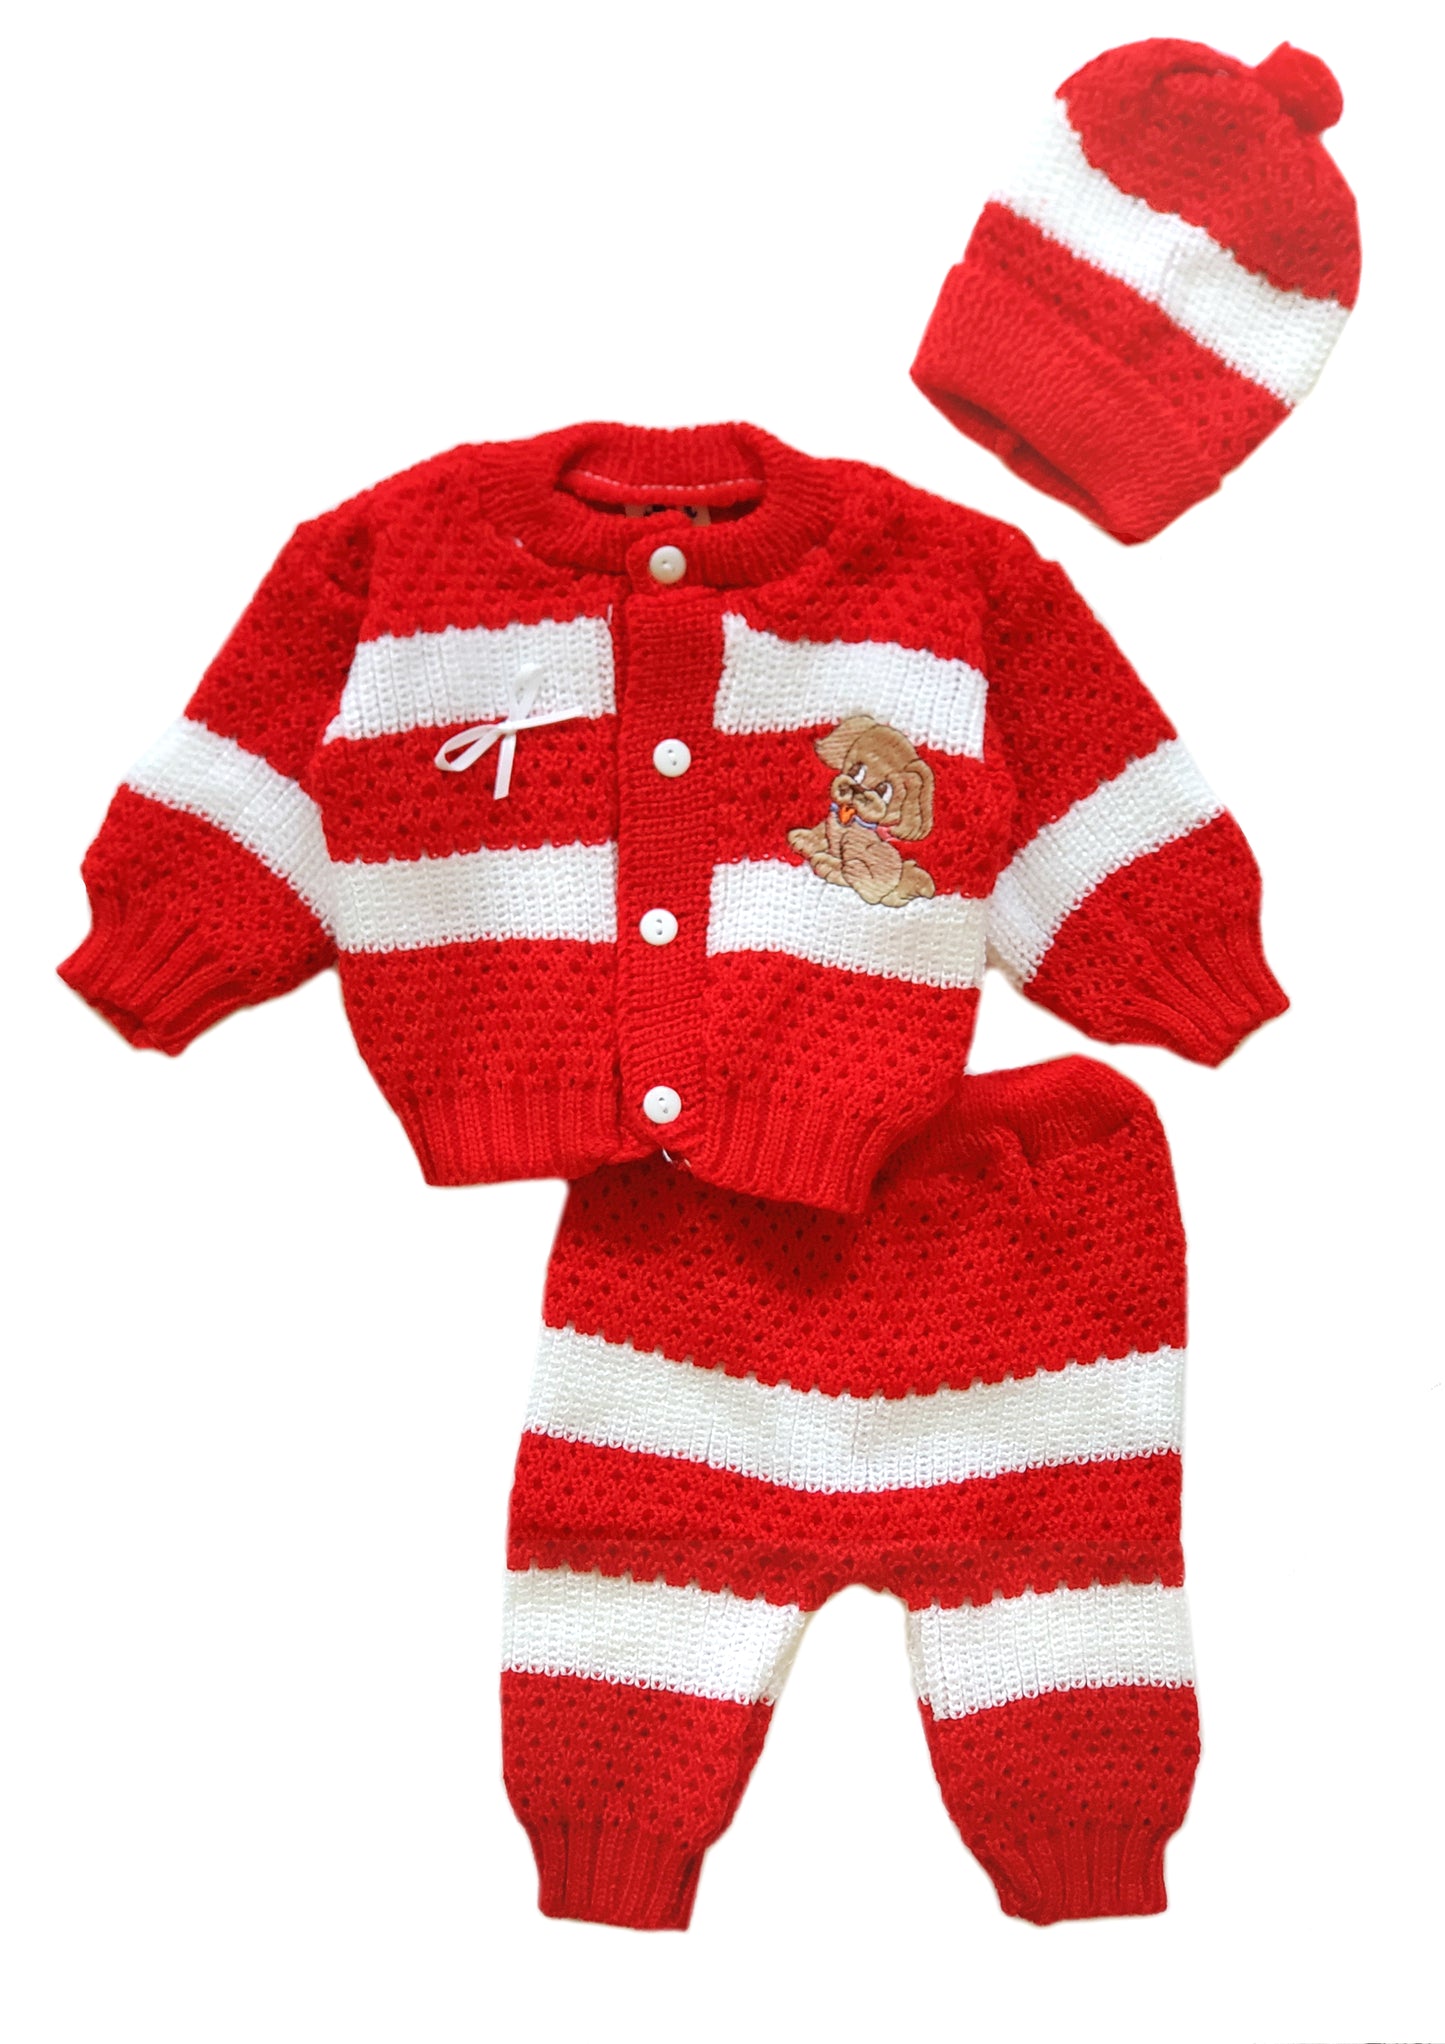 Wholesale Crochet Set Newborn Beanie Hat Sweater and Pants 3 PCs Outfit Set